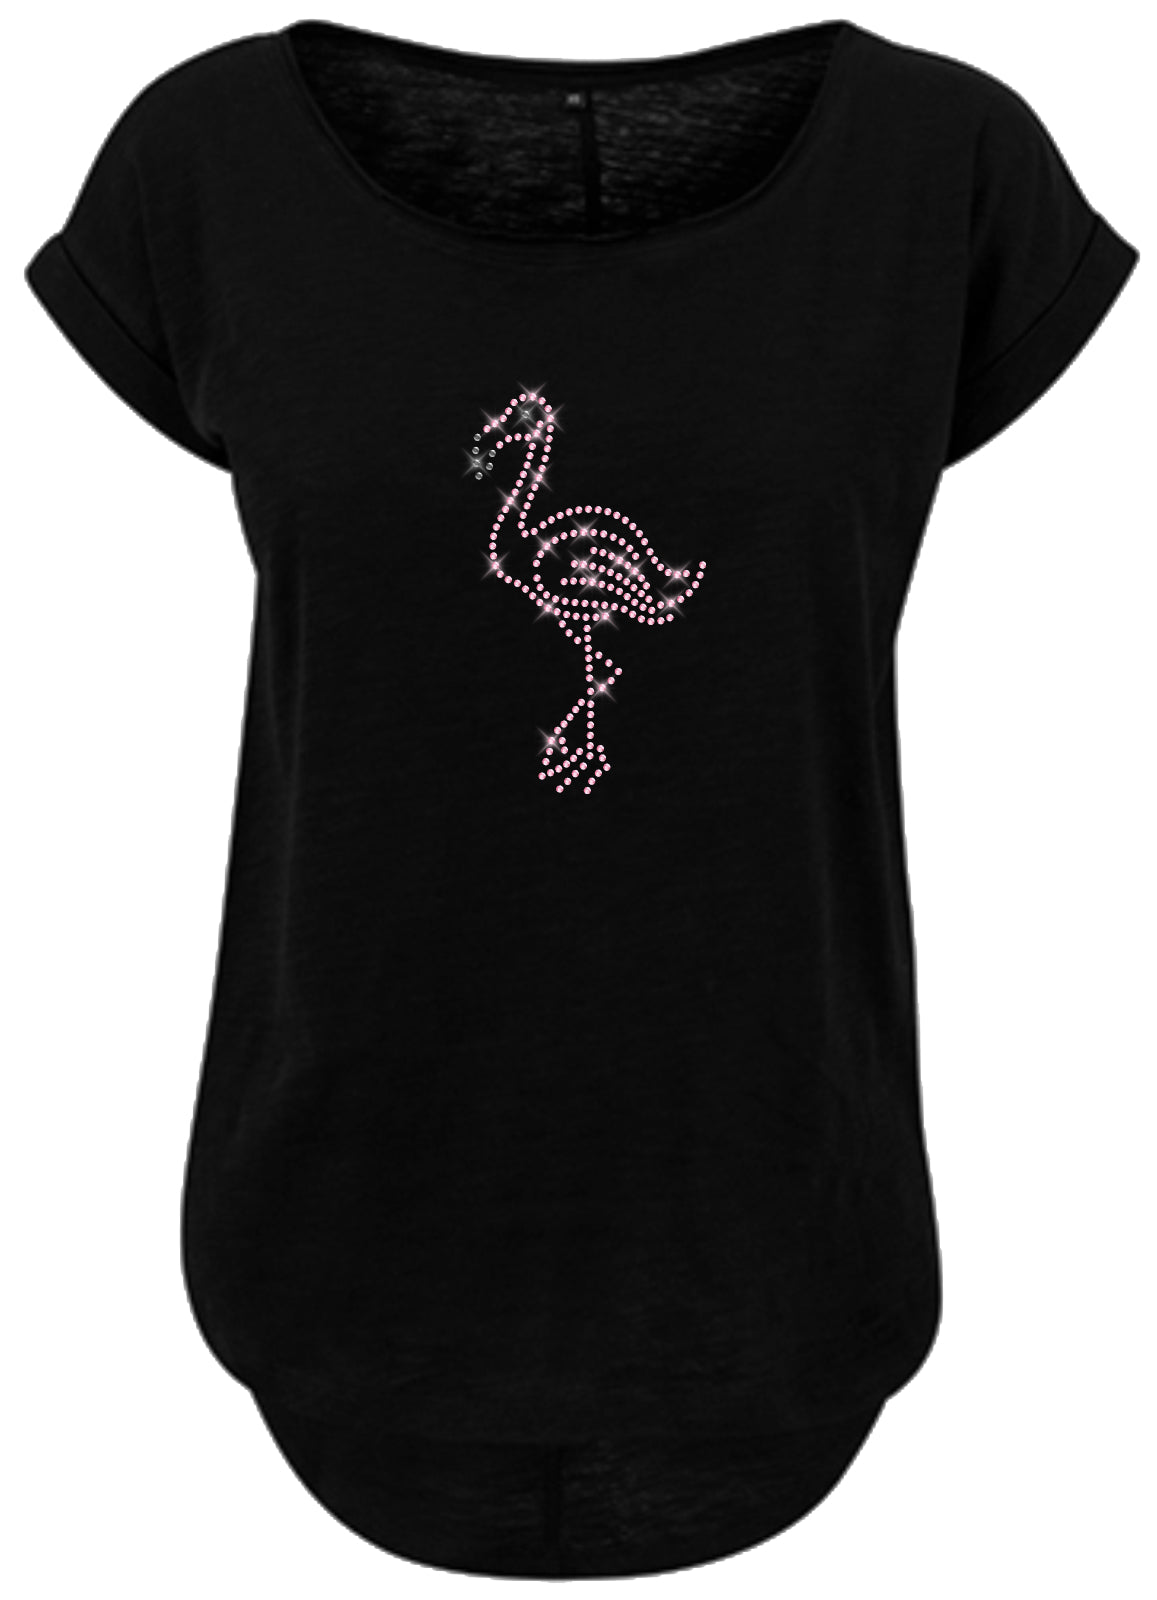 Blingeling®Shirts Damen T-Shirt   Flamingo in Rosa Strass